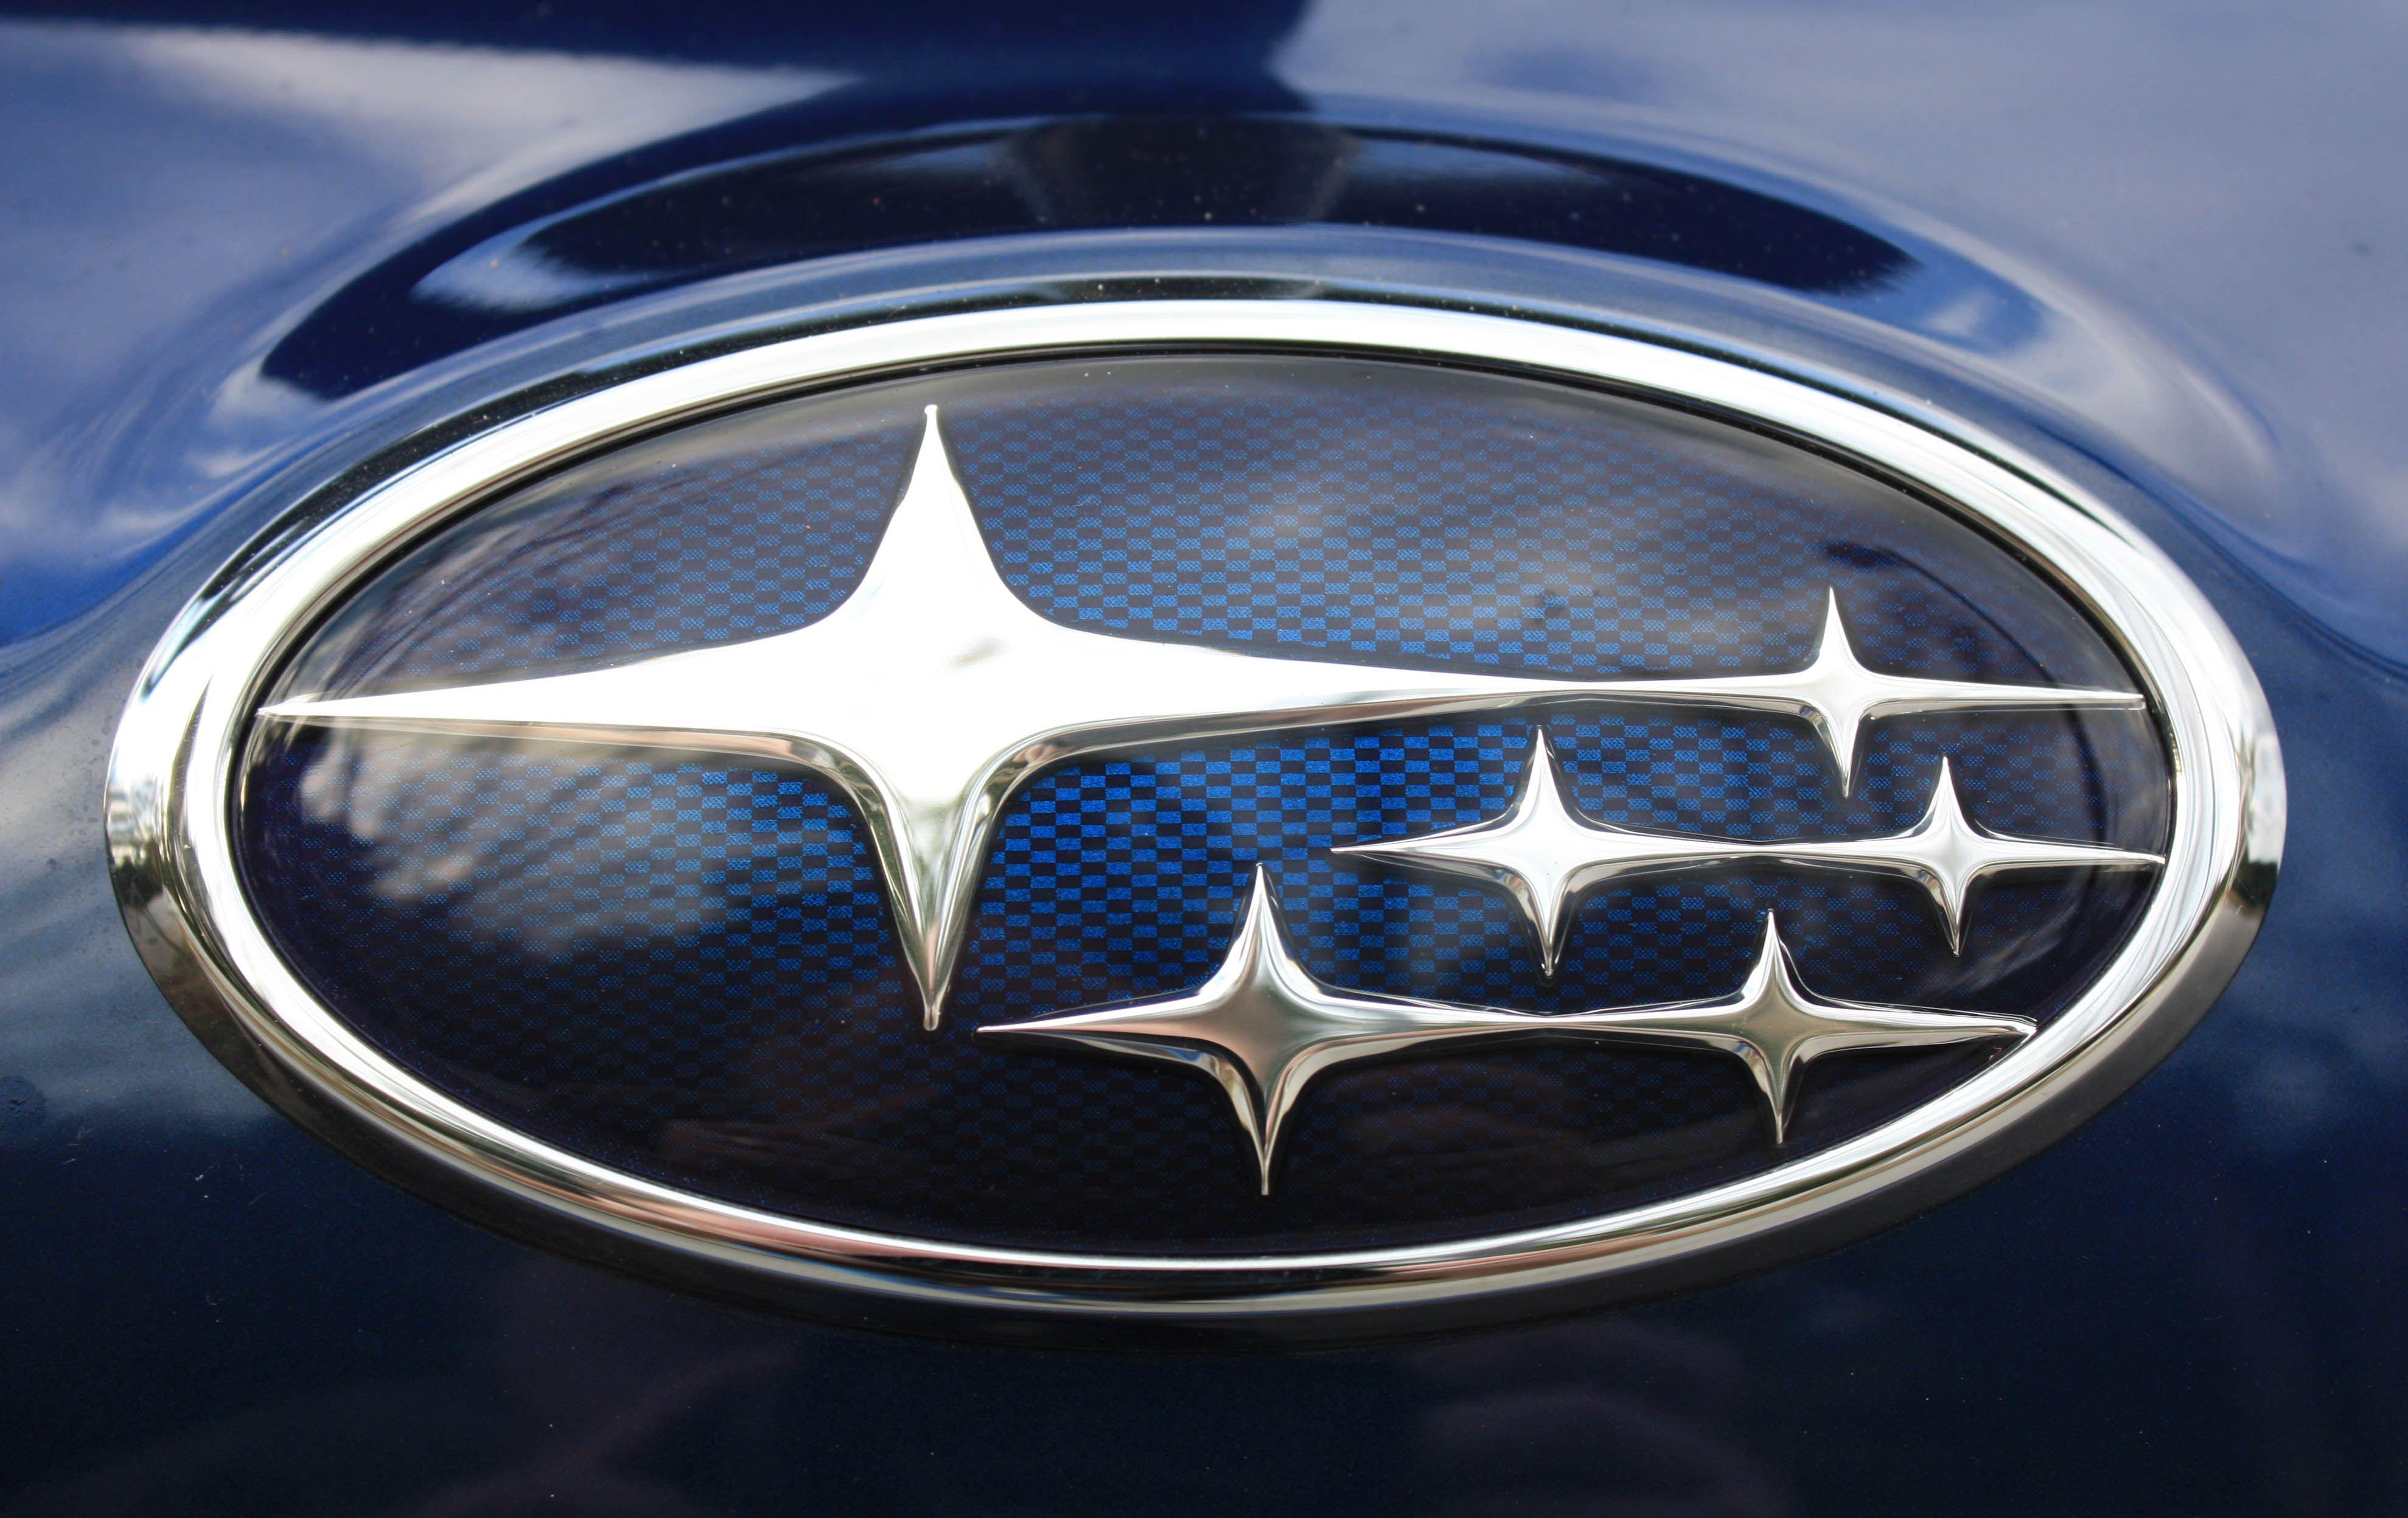 Star Automobile Logo - Subaru Logo, Subaru Car Symbol Meaning and History | Car Brand Names.com